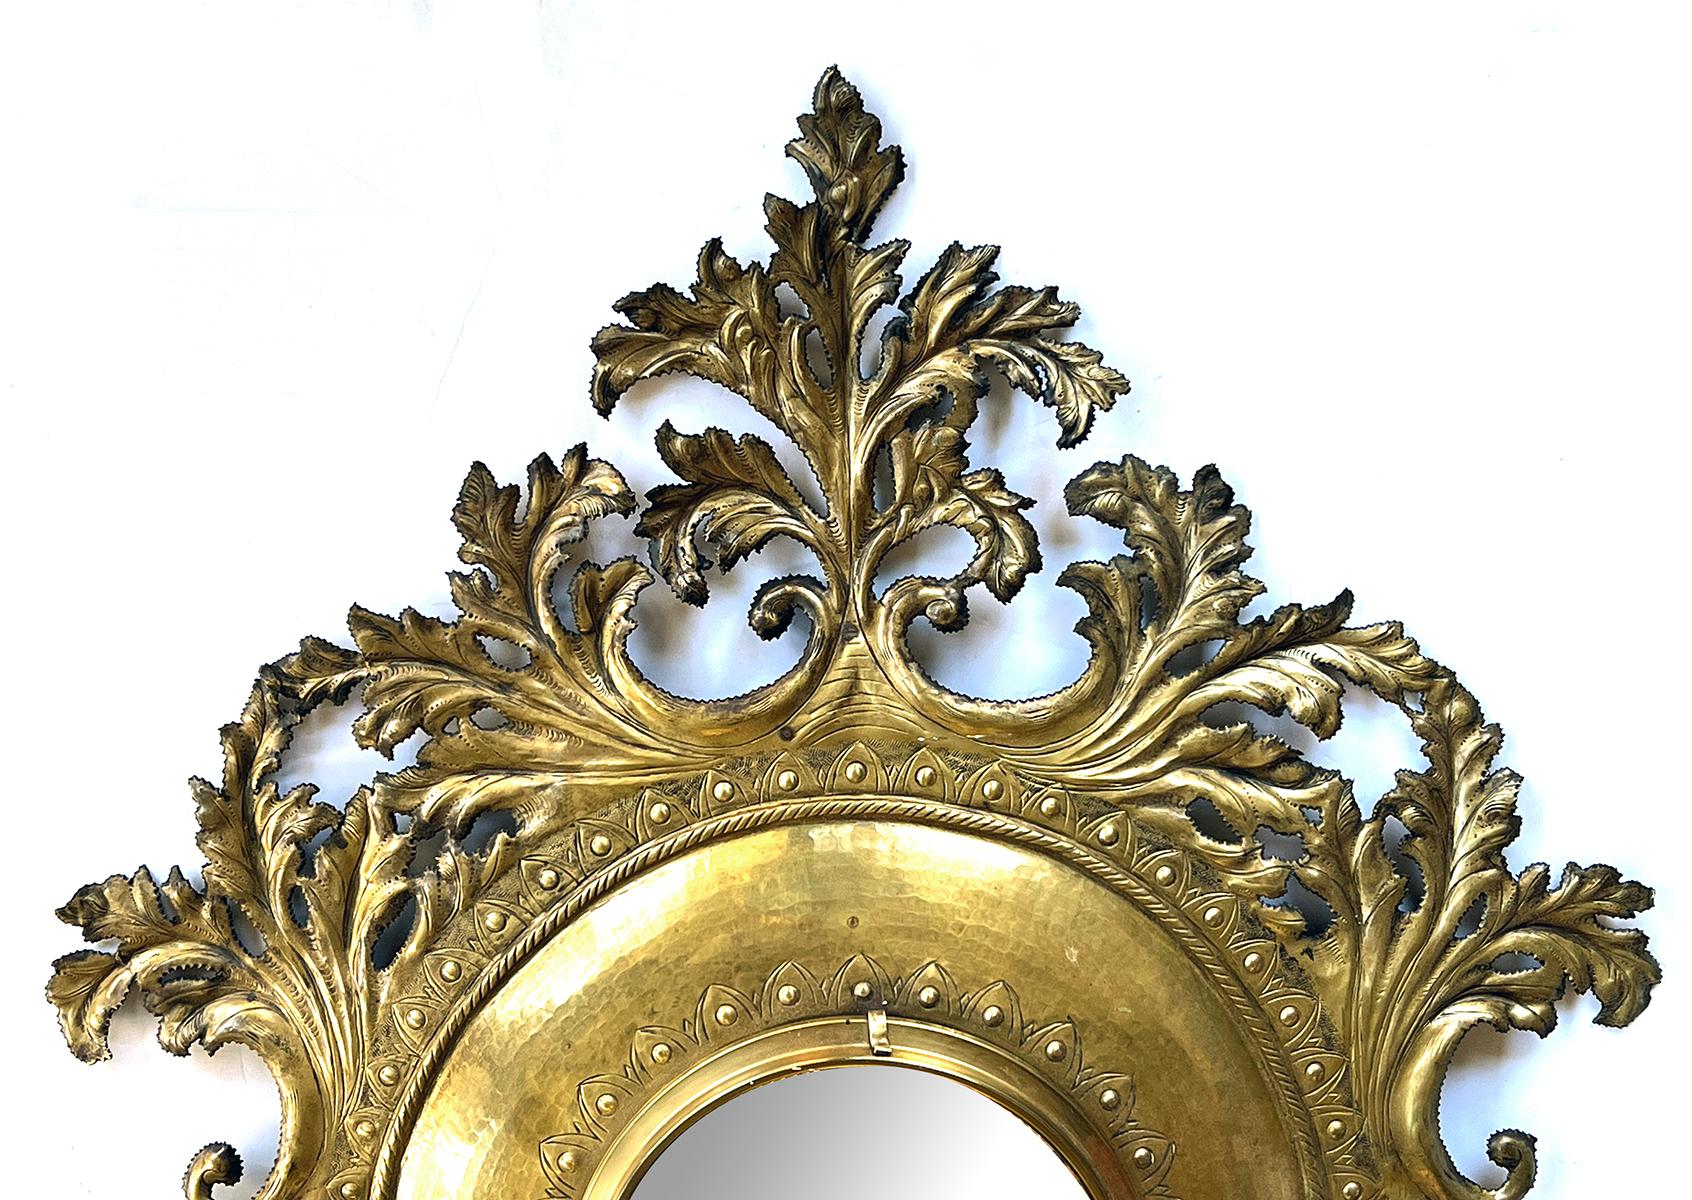 mit einem konvexen Spiegel in der Mitte eines Messingrahmens, umgeben von lebhaftem geschliffenem Messingblattwerk